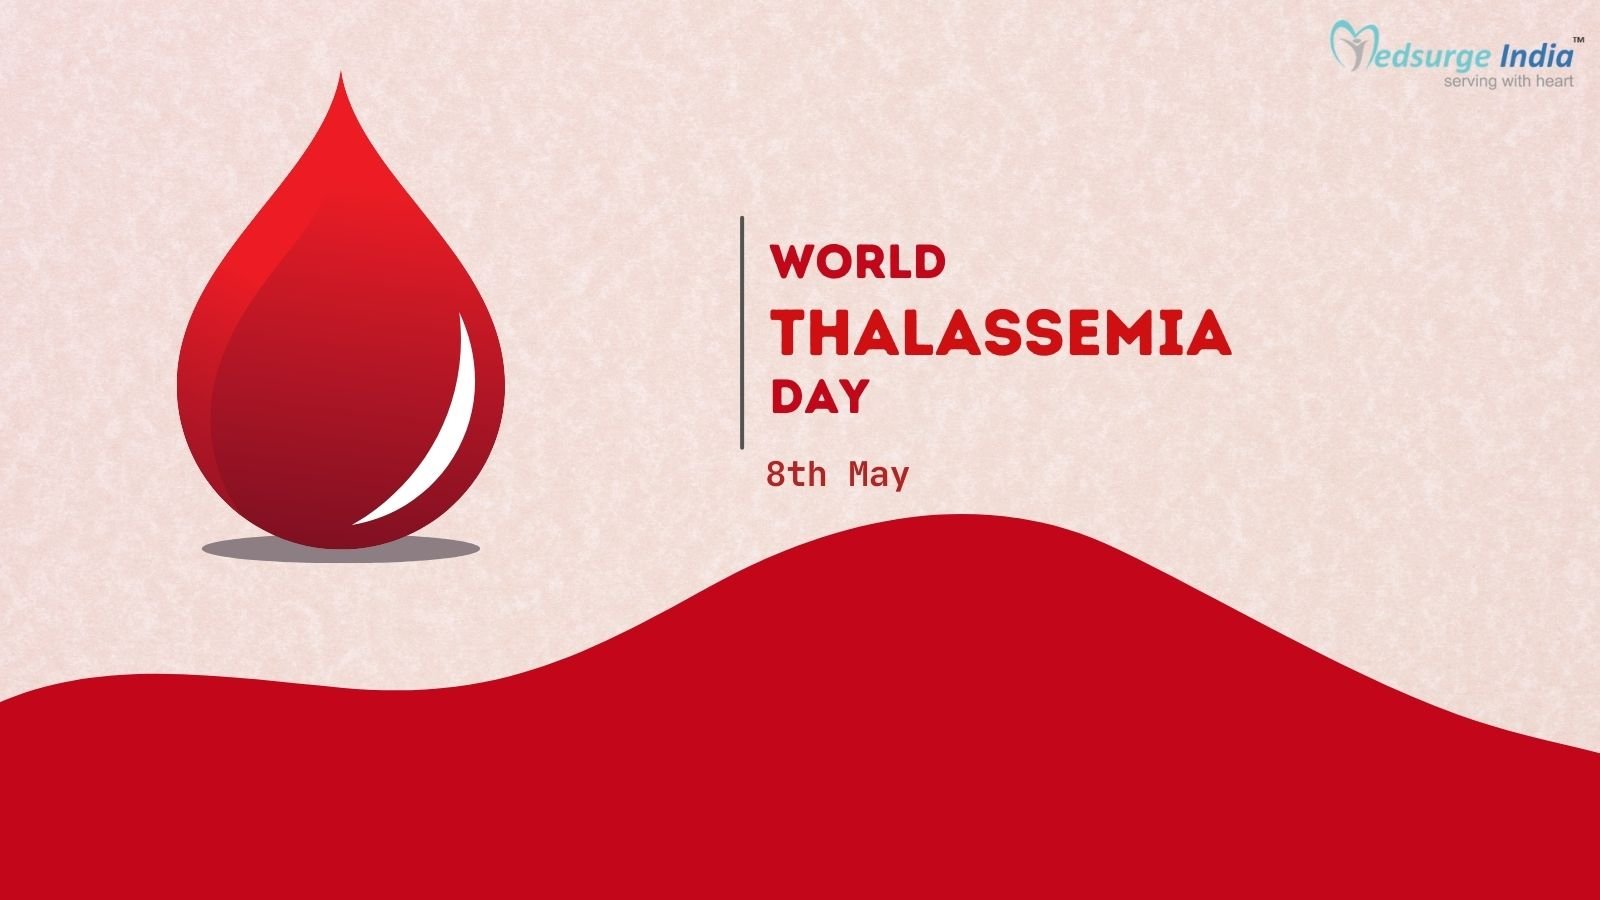 World Thalassemia Day 2023 – Medsurge India